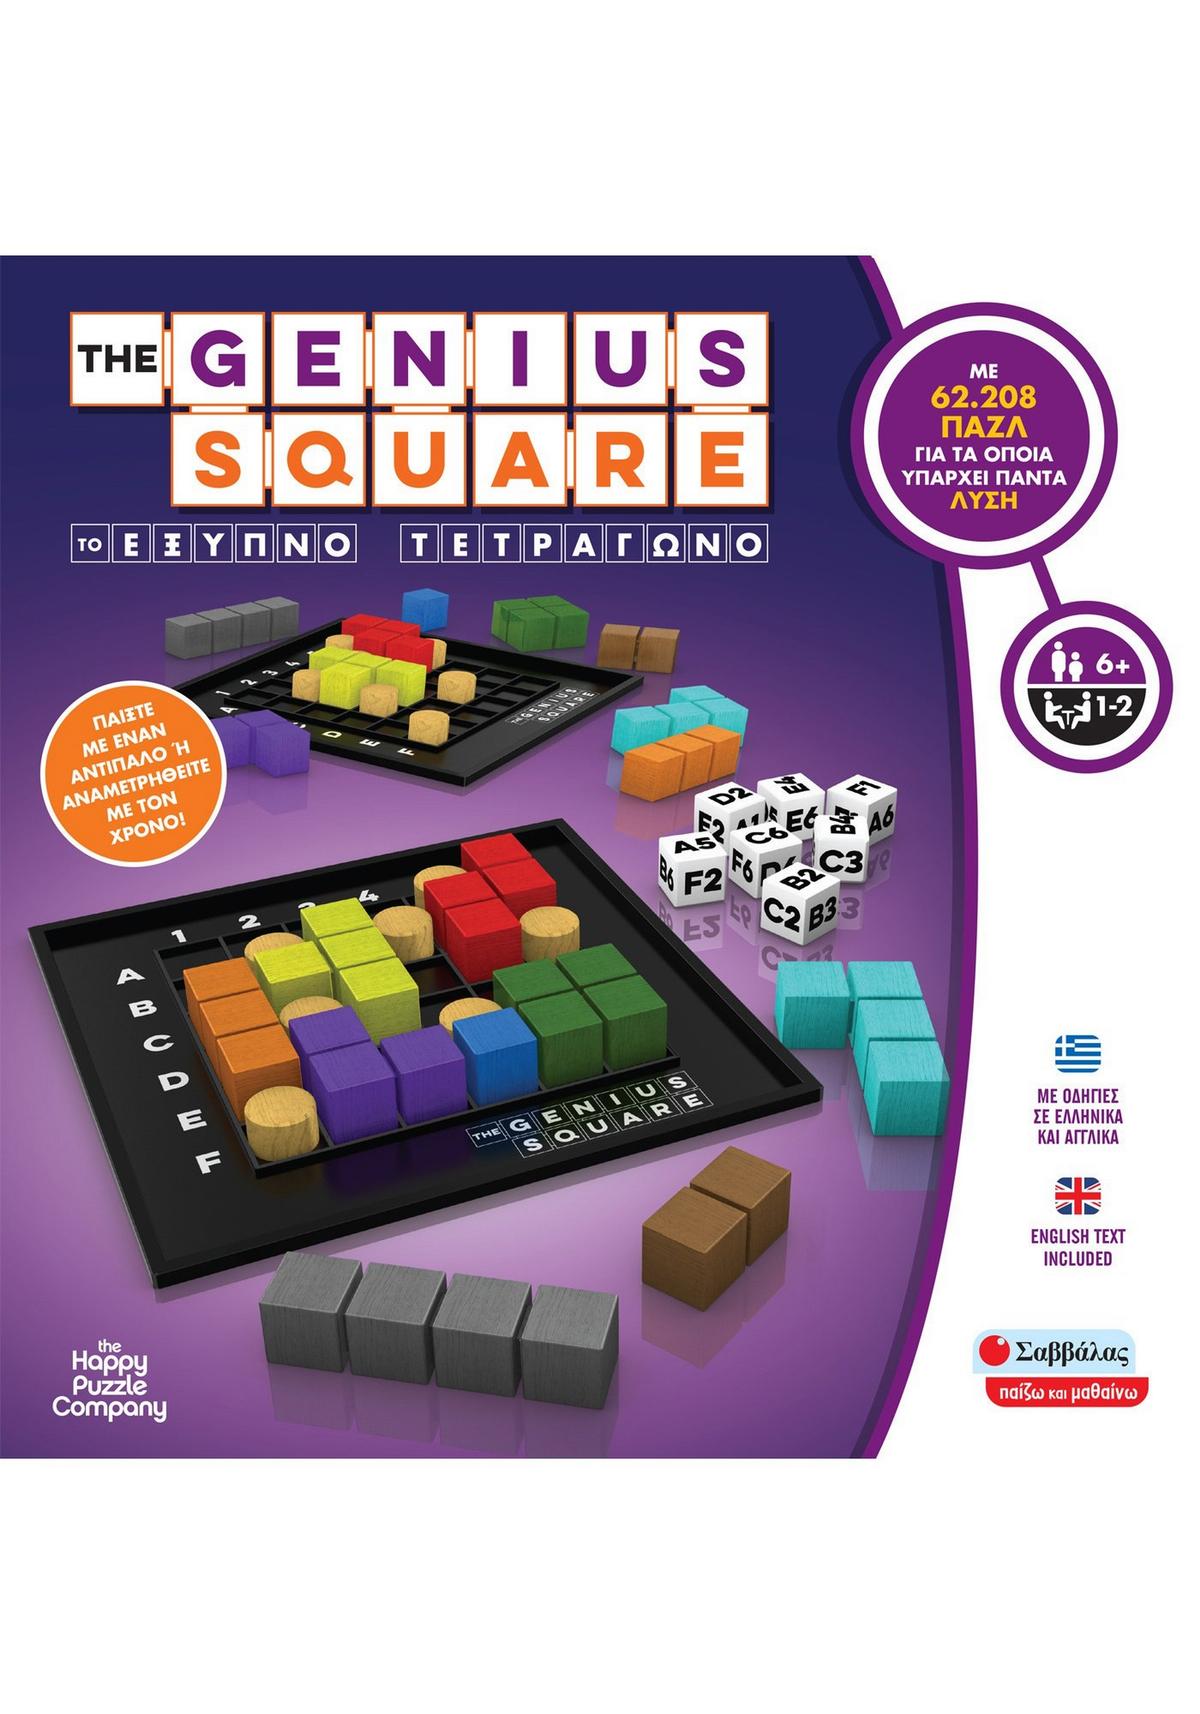 The genius square - Το έξυπνο τετράγωνο